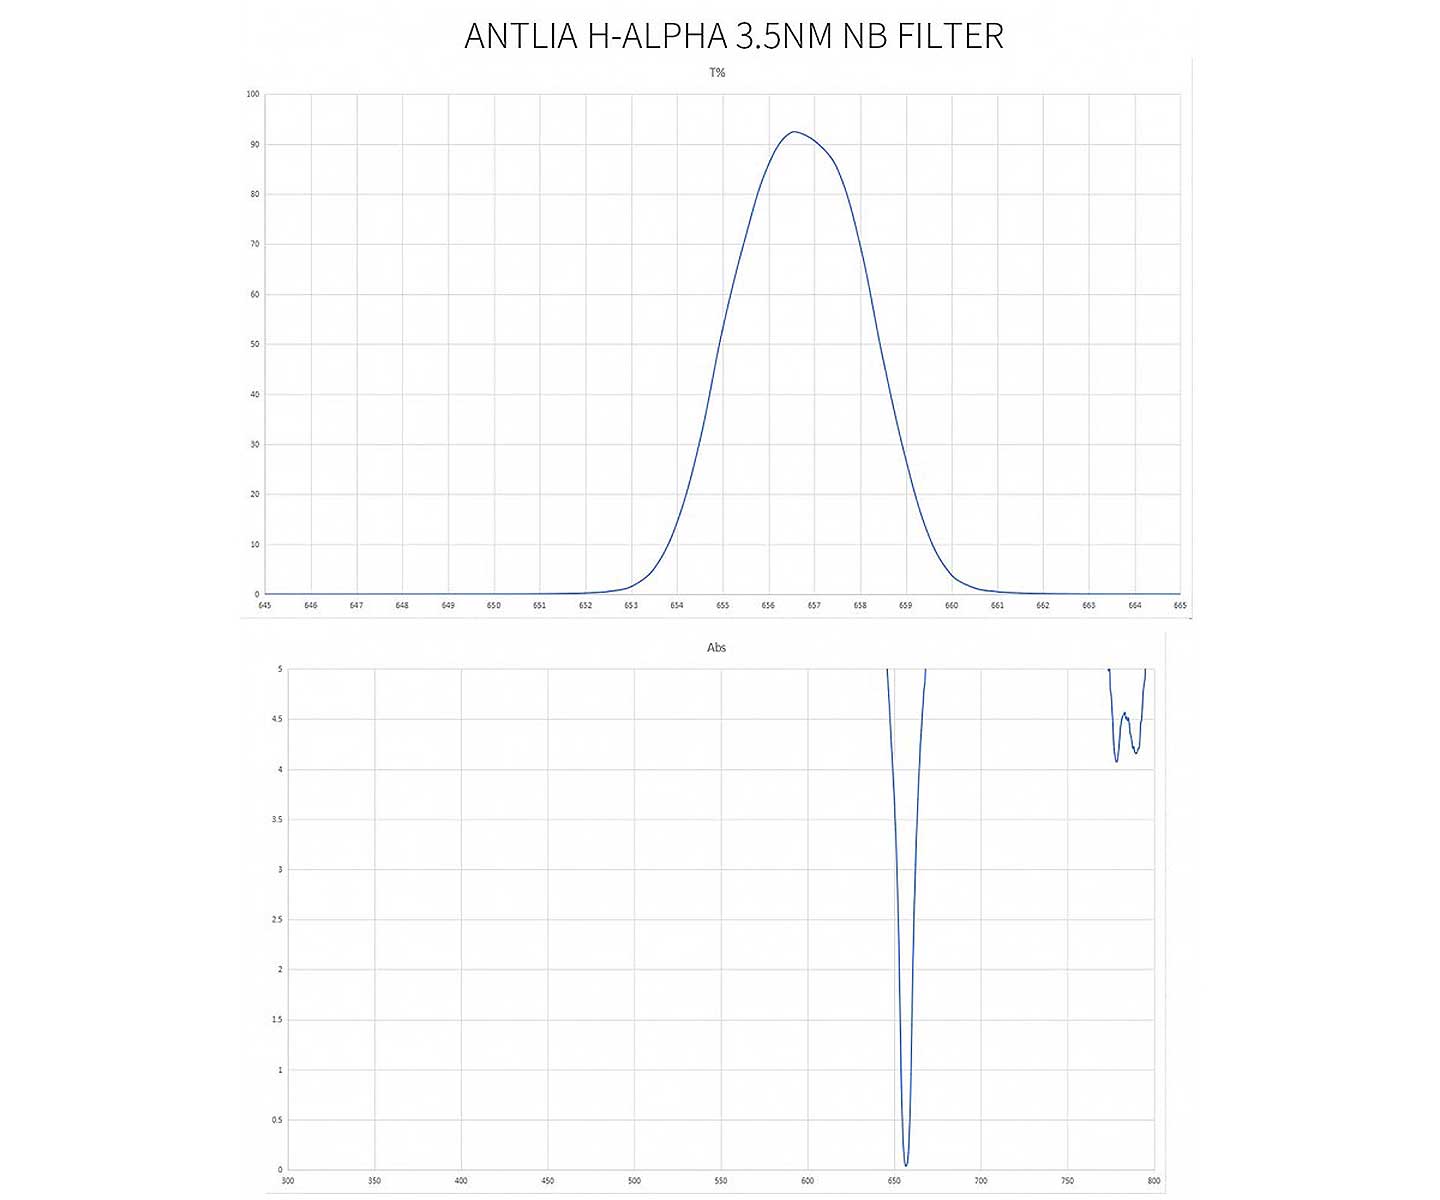  Il filtro H-Alpha da 3nm da 36mm non montato in cella di Antlia Filters è un filtro a banda molto stretta efficace contro l'inquinamento luminoso 